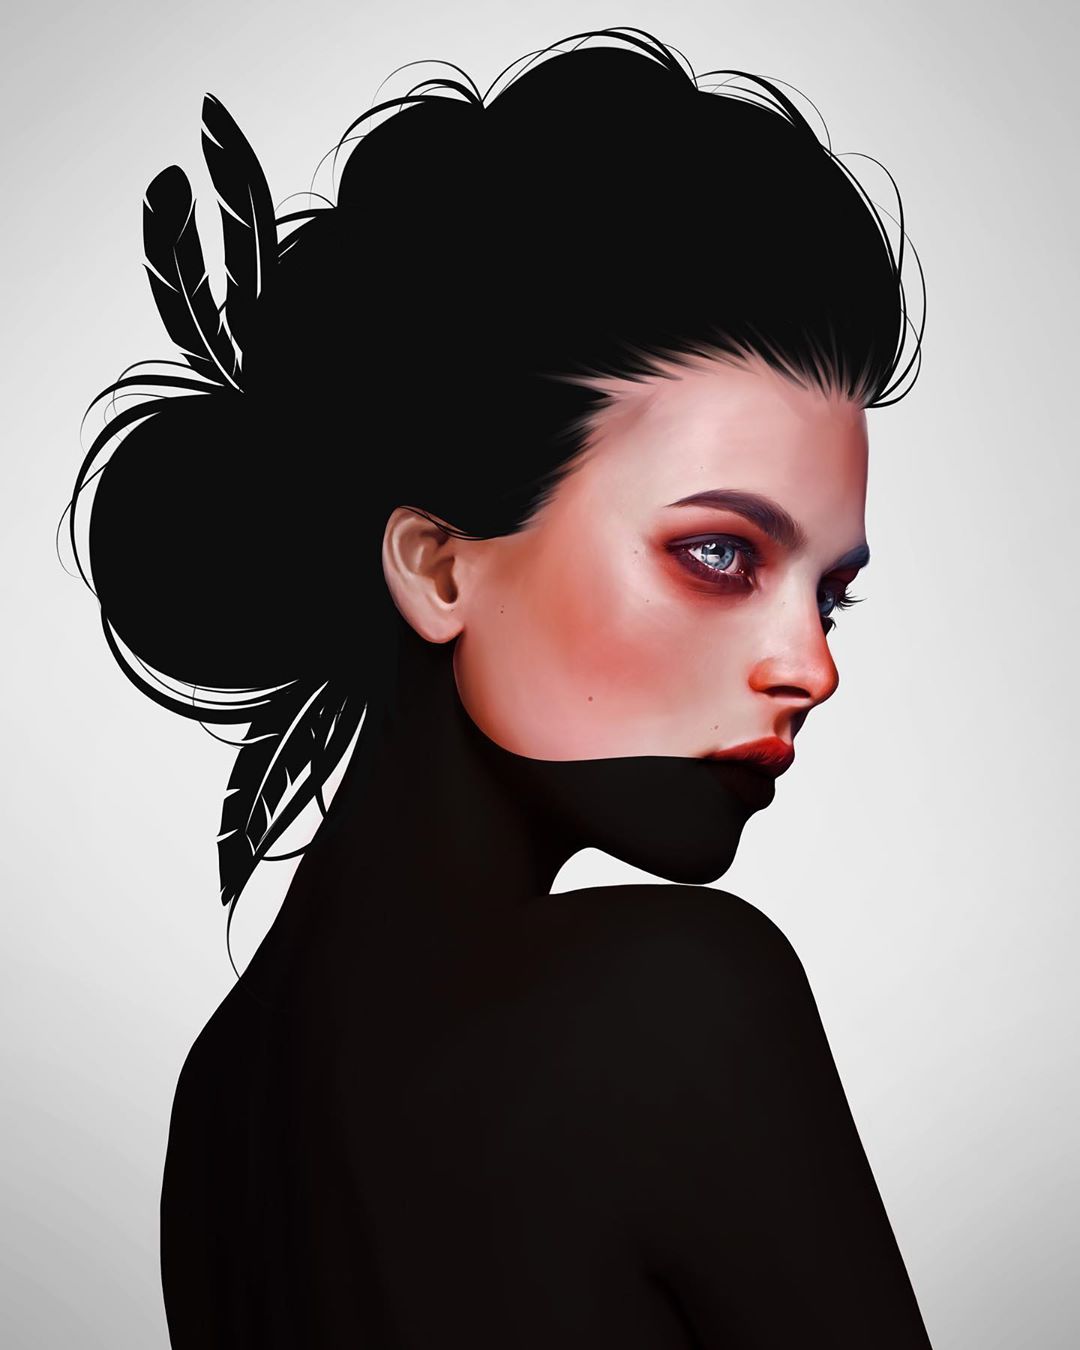 General 1080x1350 digital art women model simple background looking away black hair makeup portrait